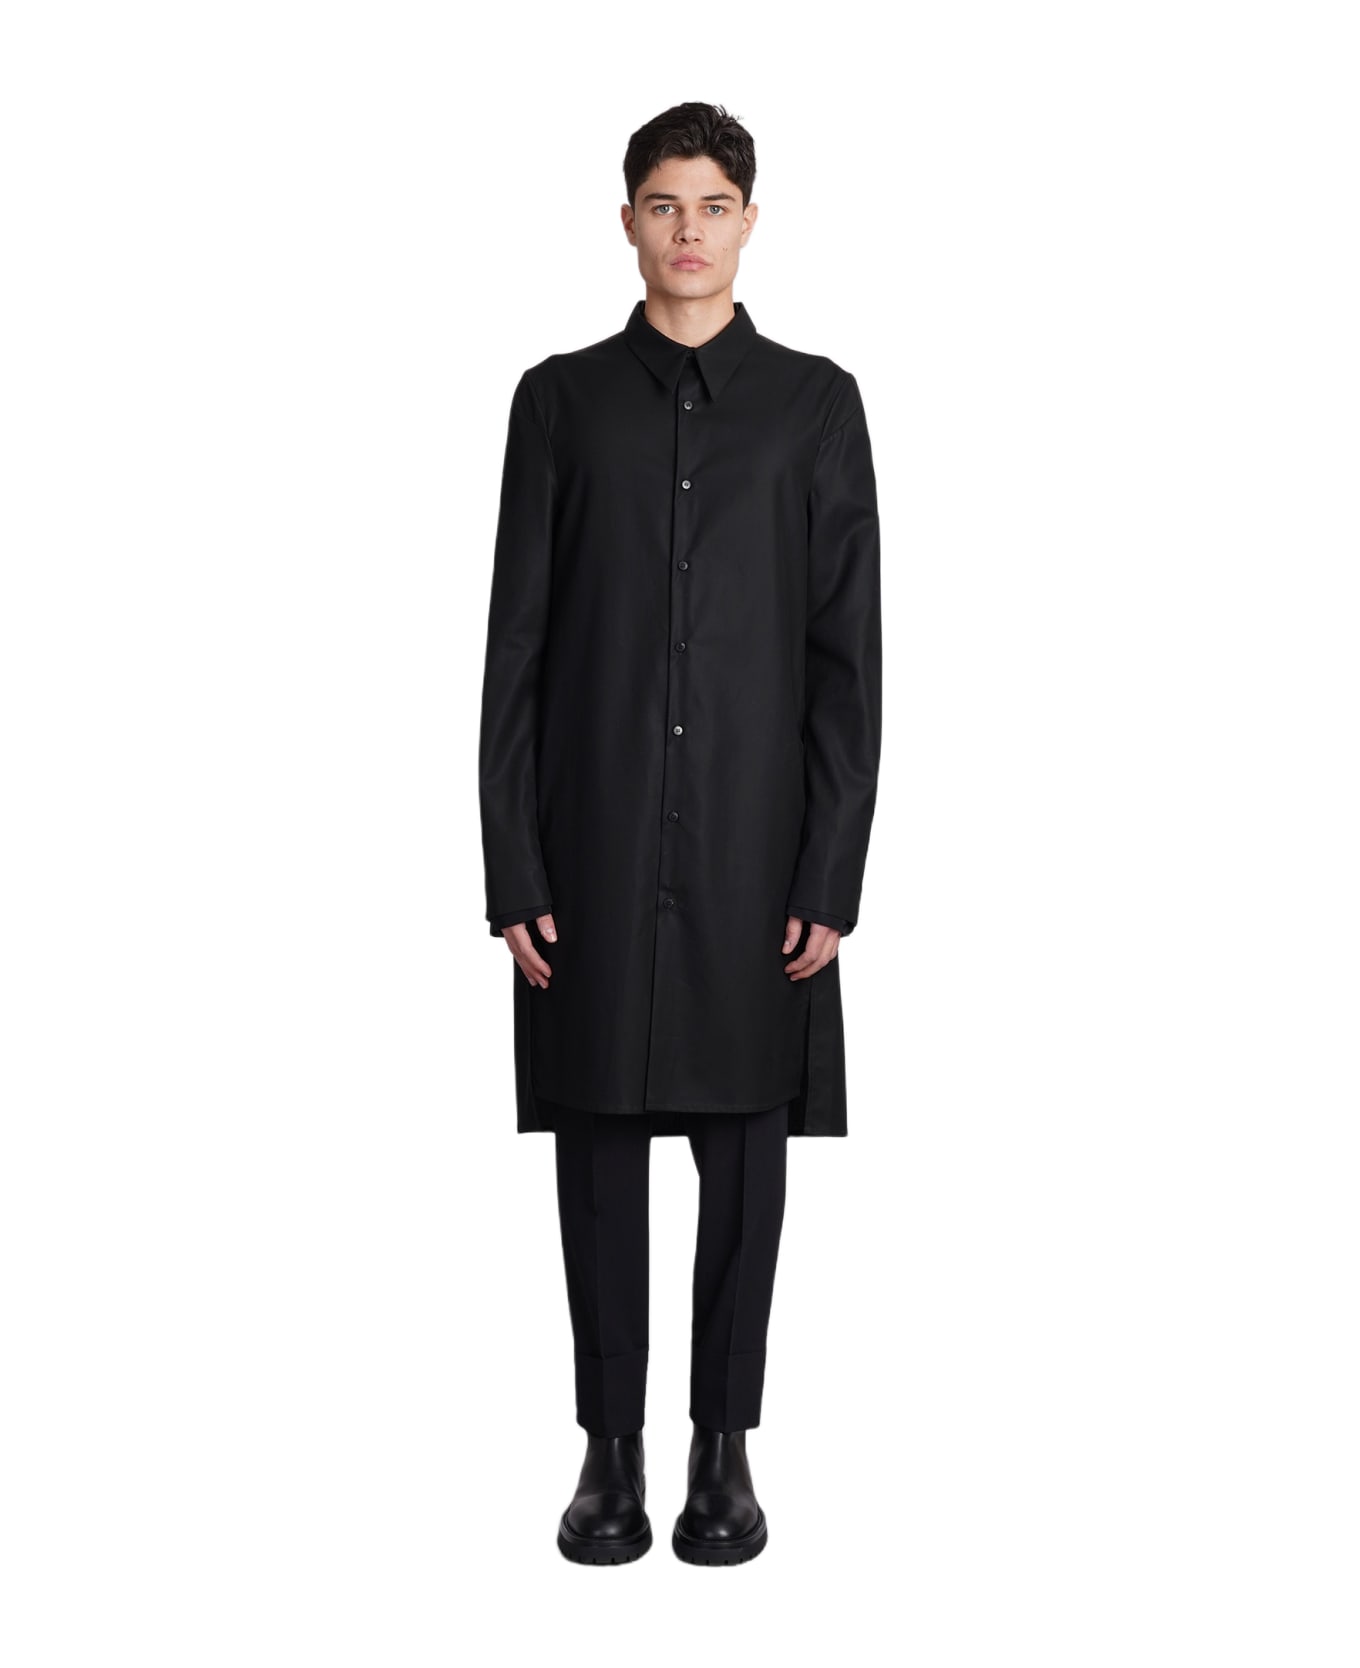 Sapio N151 Coat In Black Cotton - black コート